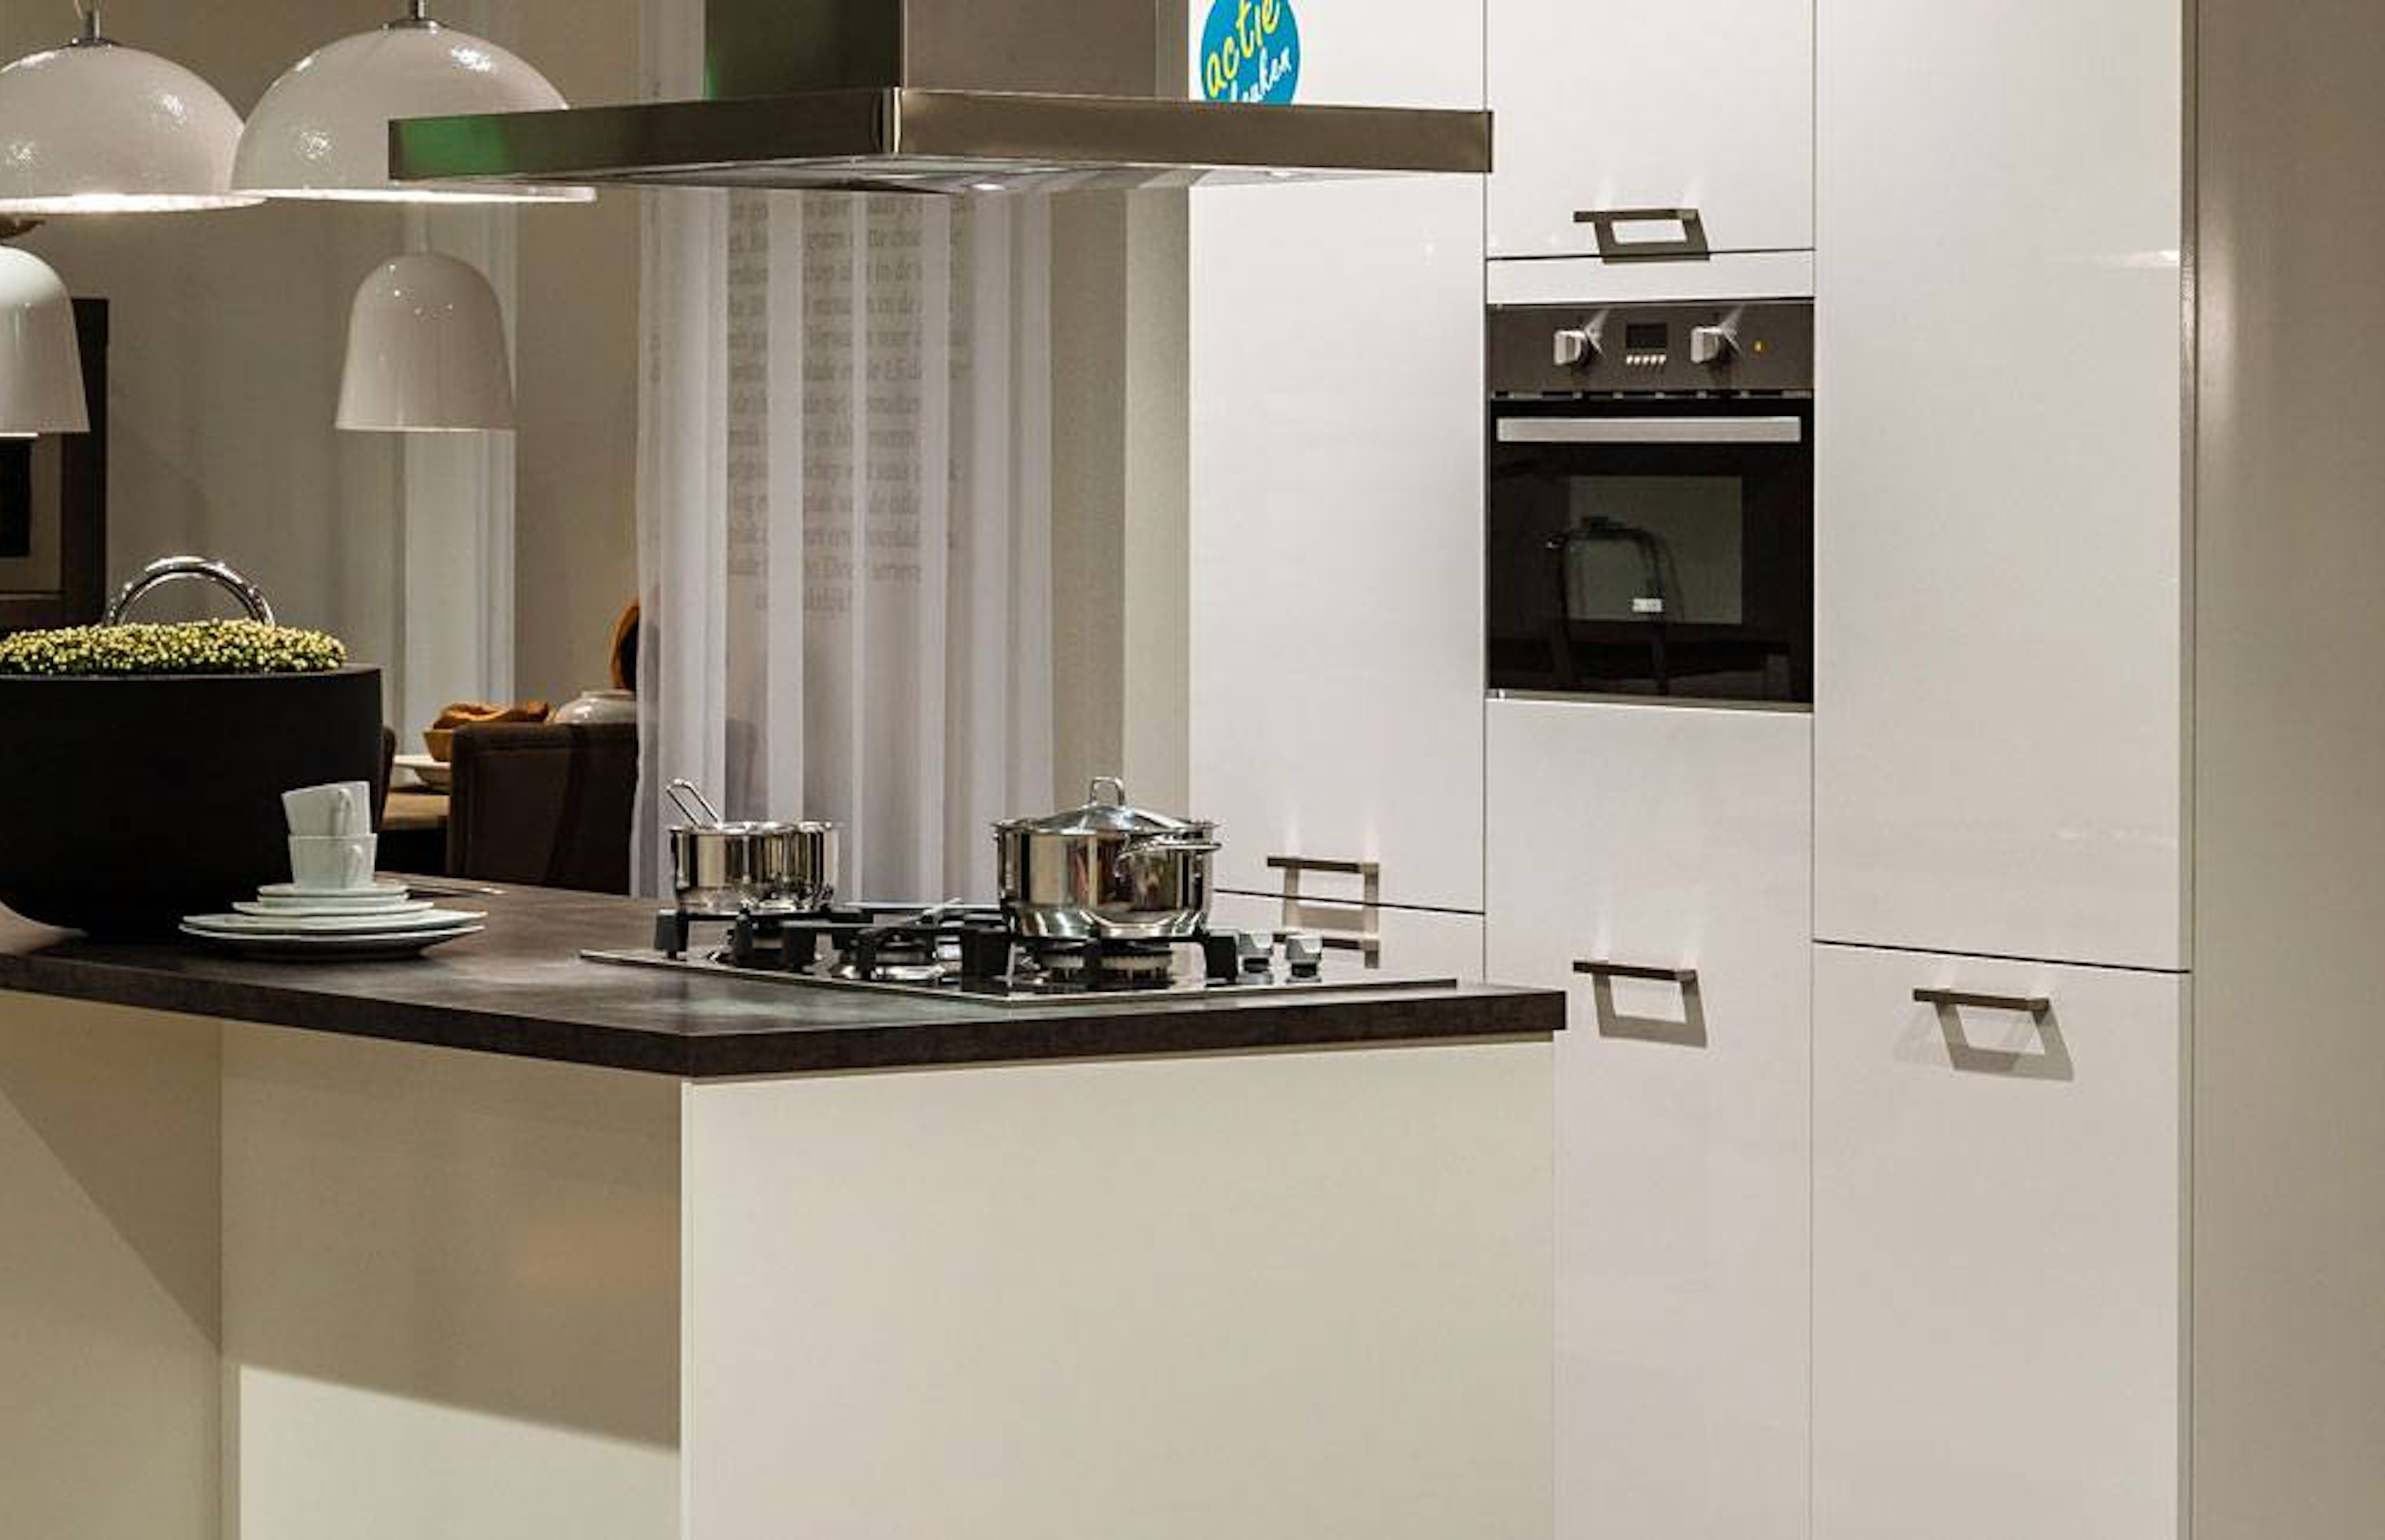 Moderne keuken met spoel-kookeiland en kastenwand